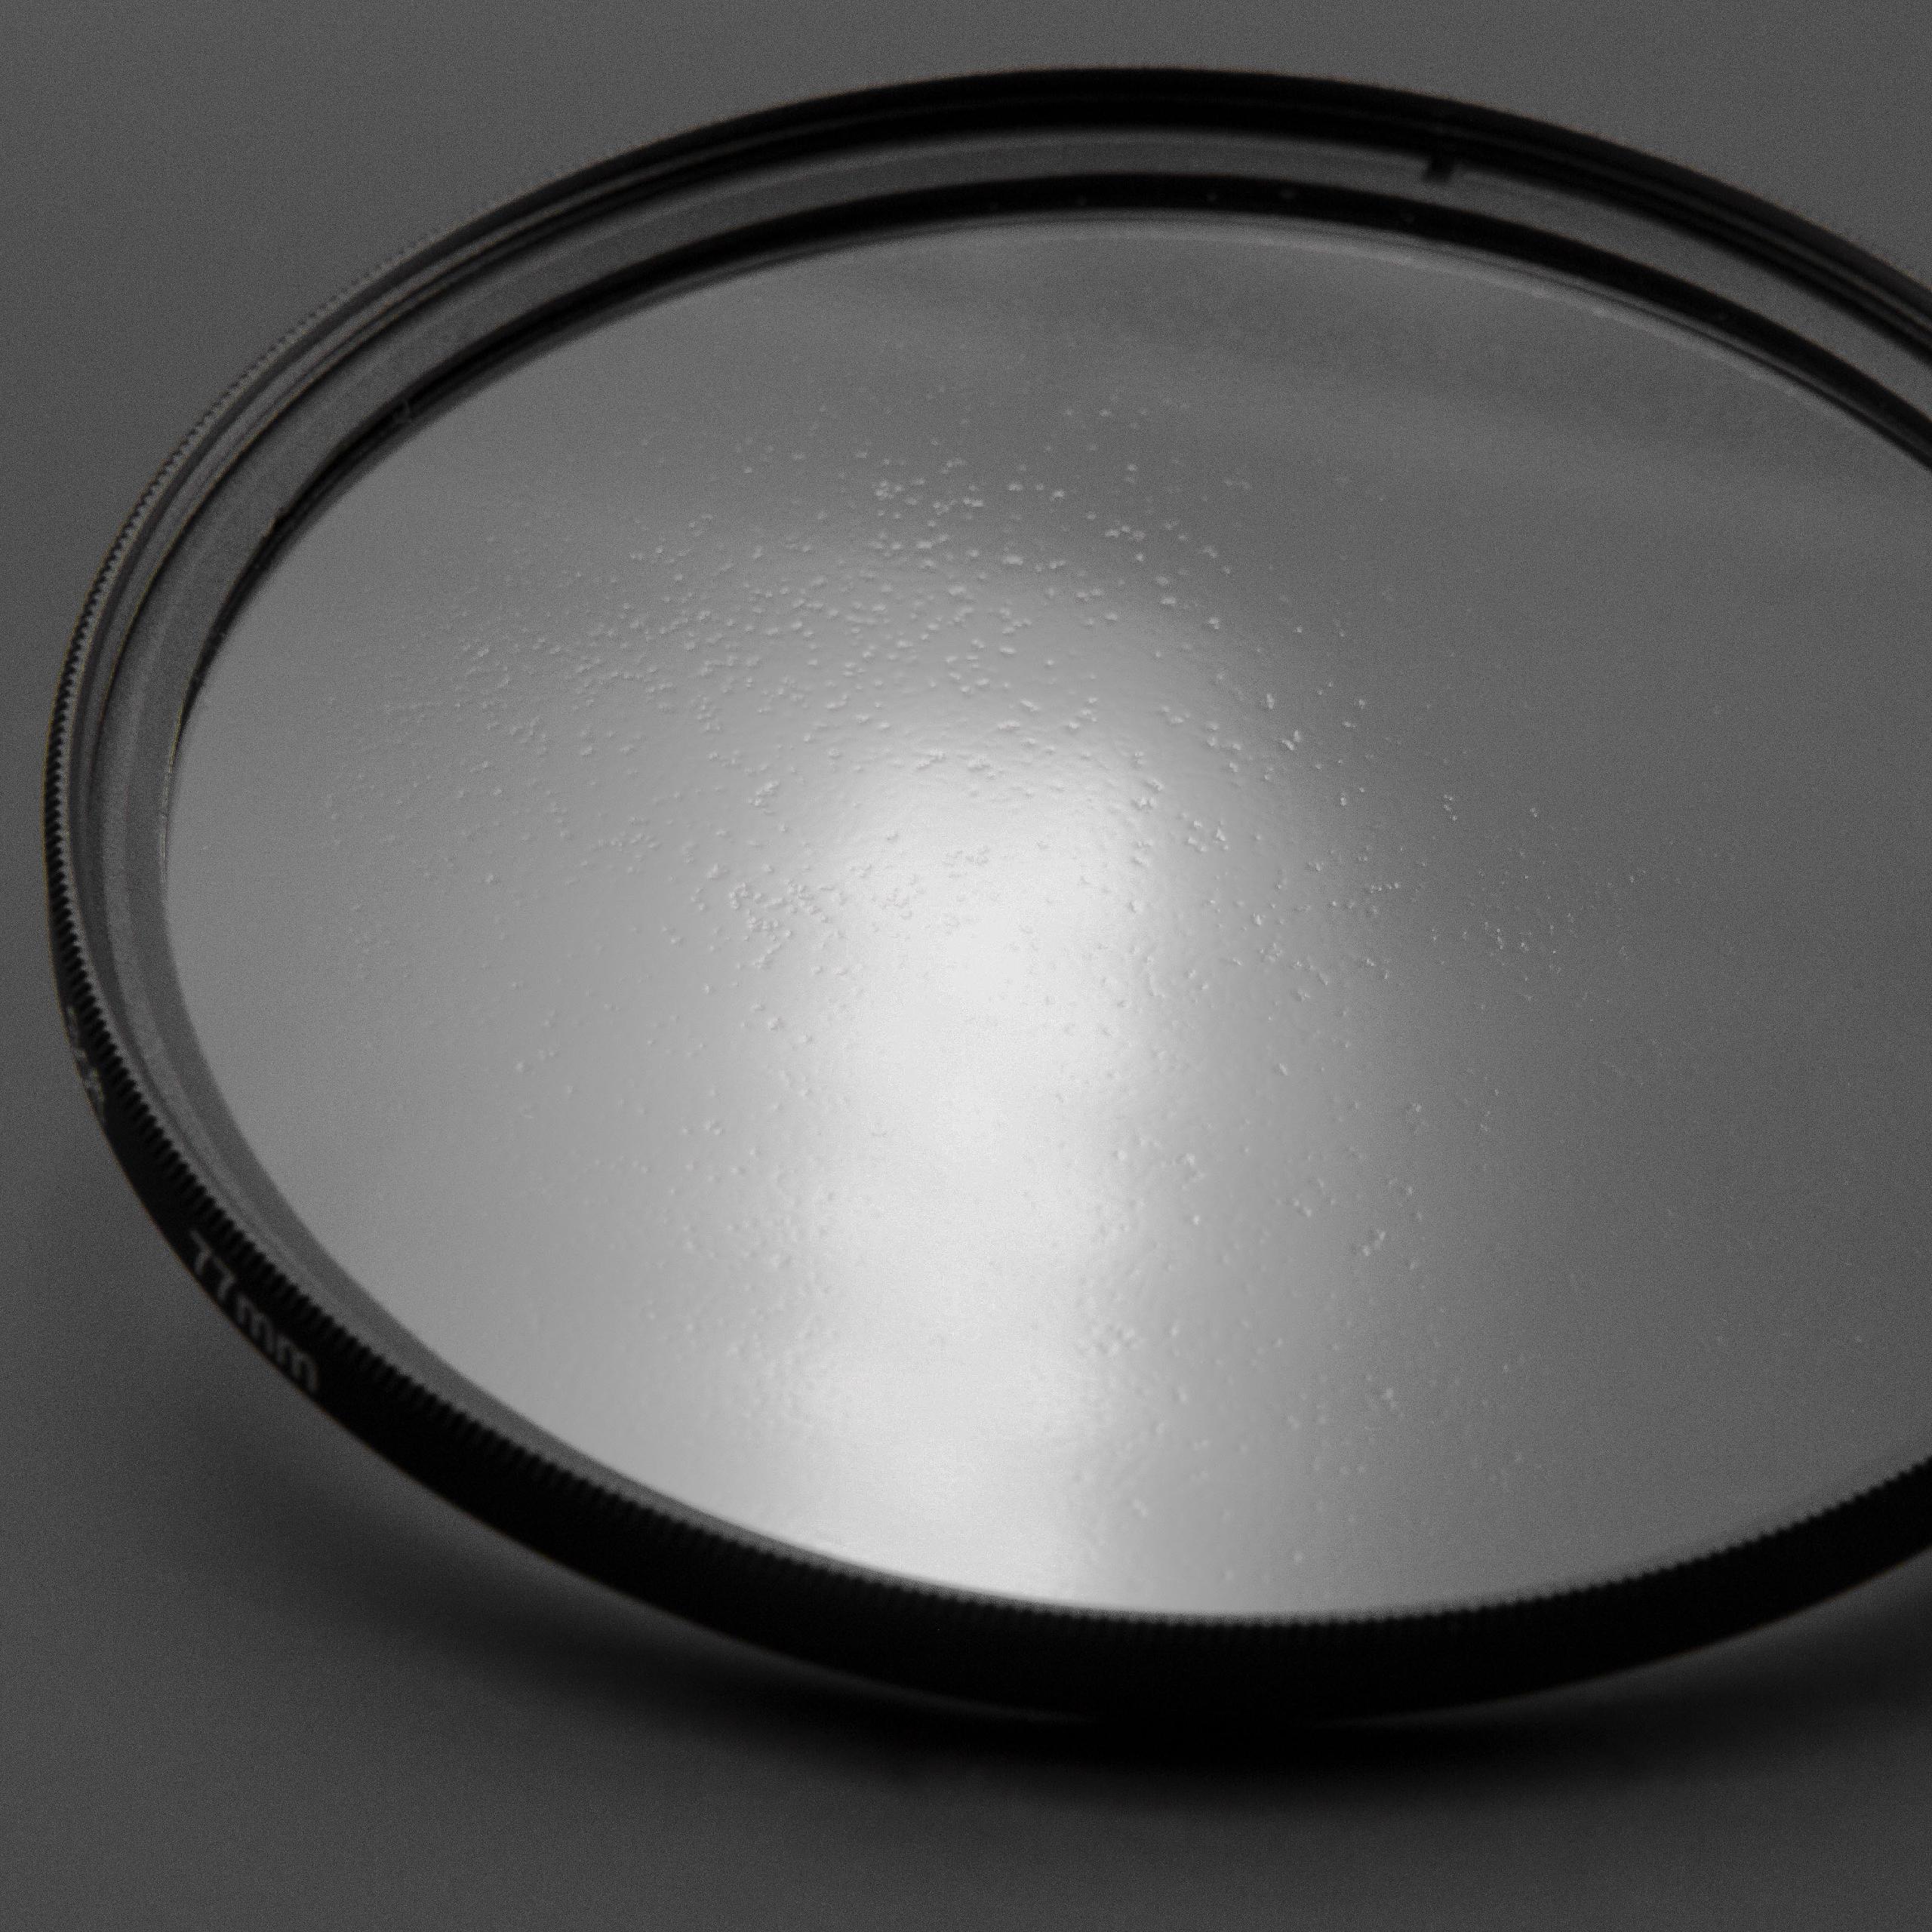 Filtre soft pour objectif d'appareil photo de diamètre 62 mm - Filtre doux